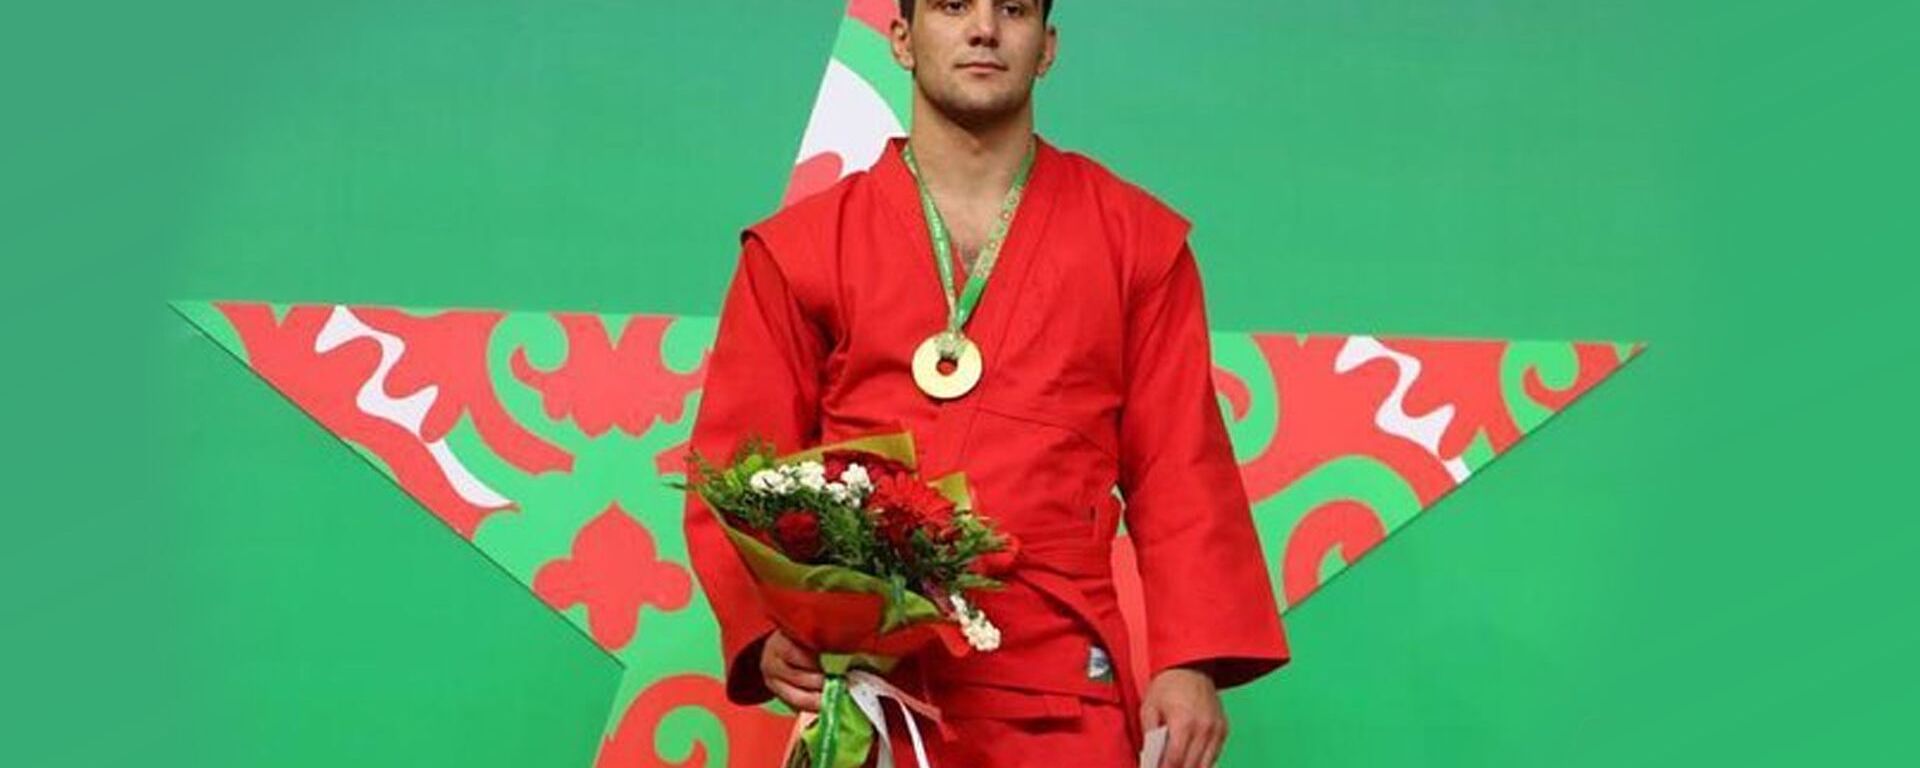 Самбист Асланбек Кодзаев выиграл чемпионат России - Sputnik Южная Осетия, 1920, 11.11.2019